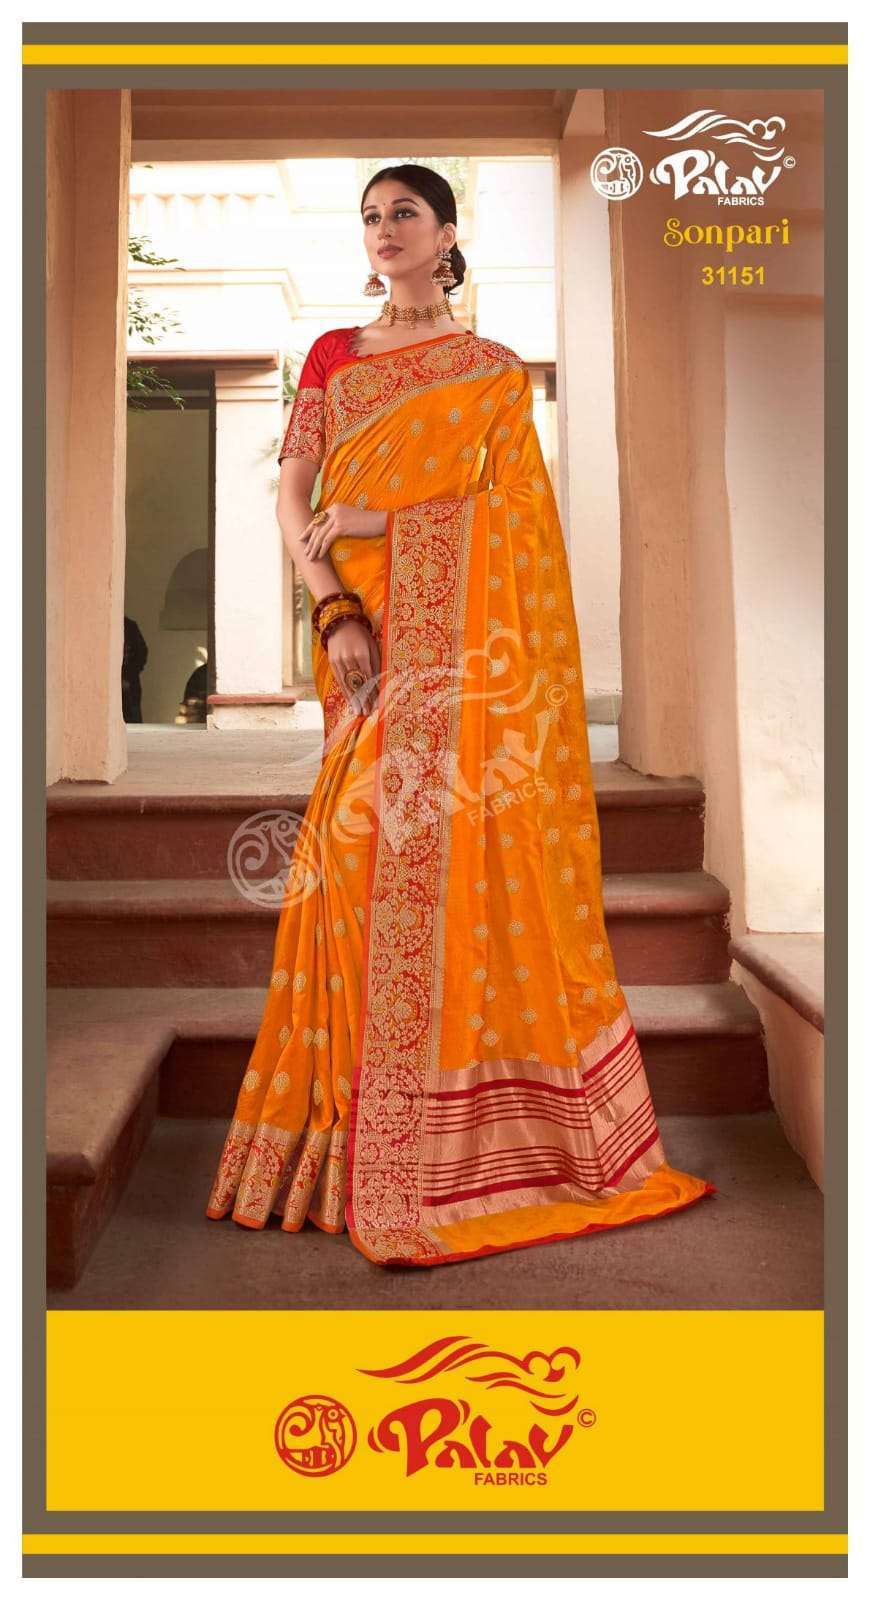 Palav Fabrics Sonpari Silk Traditional Sarees Collection 03